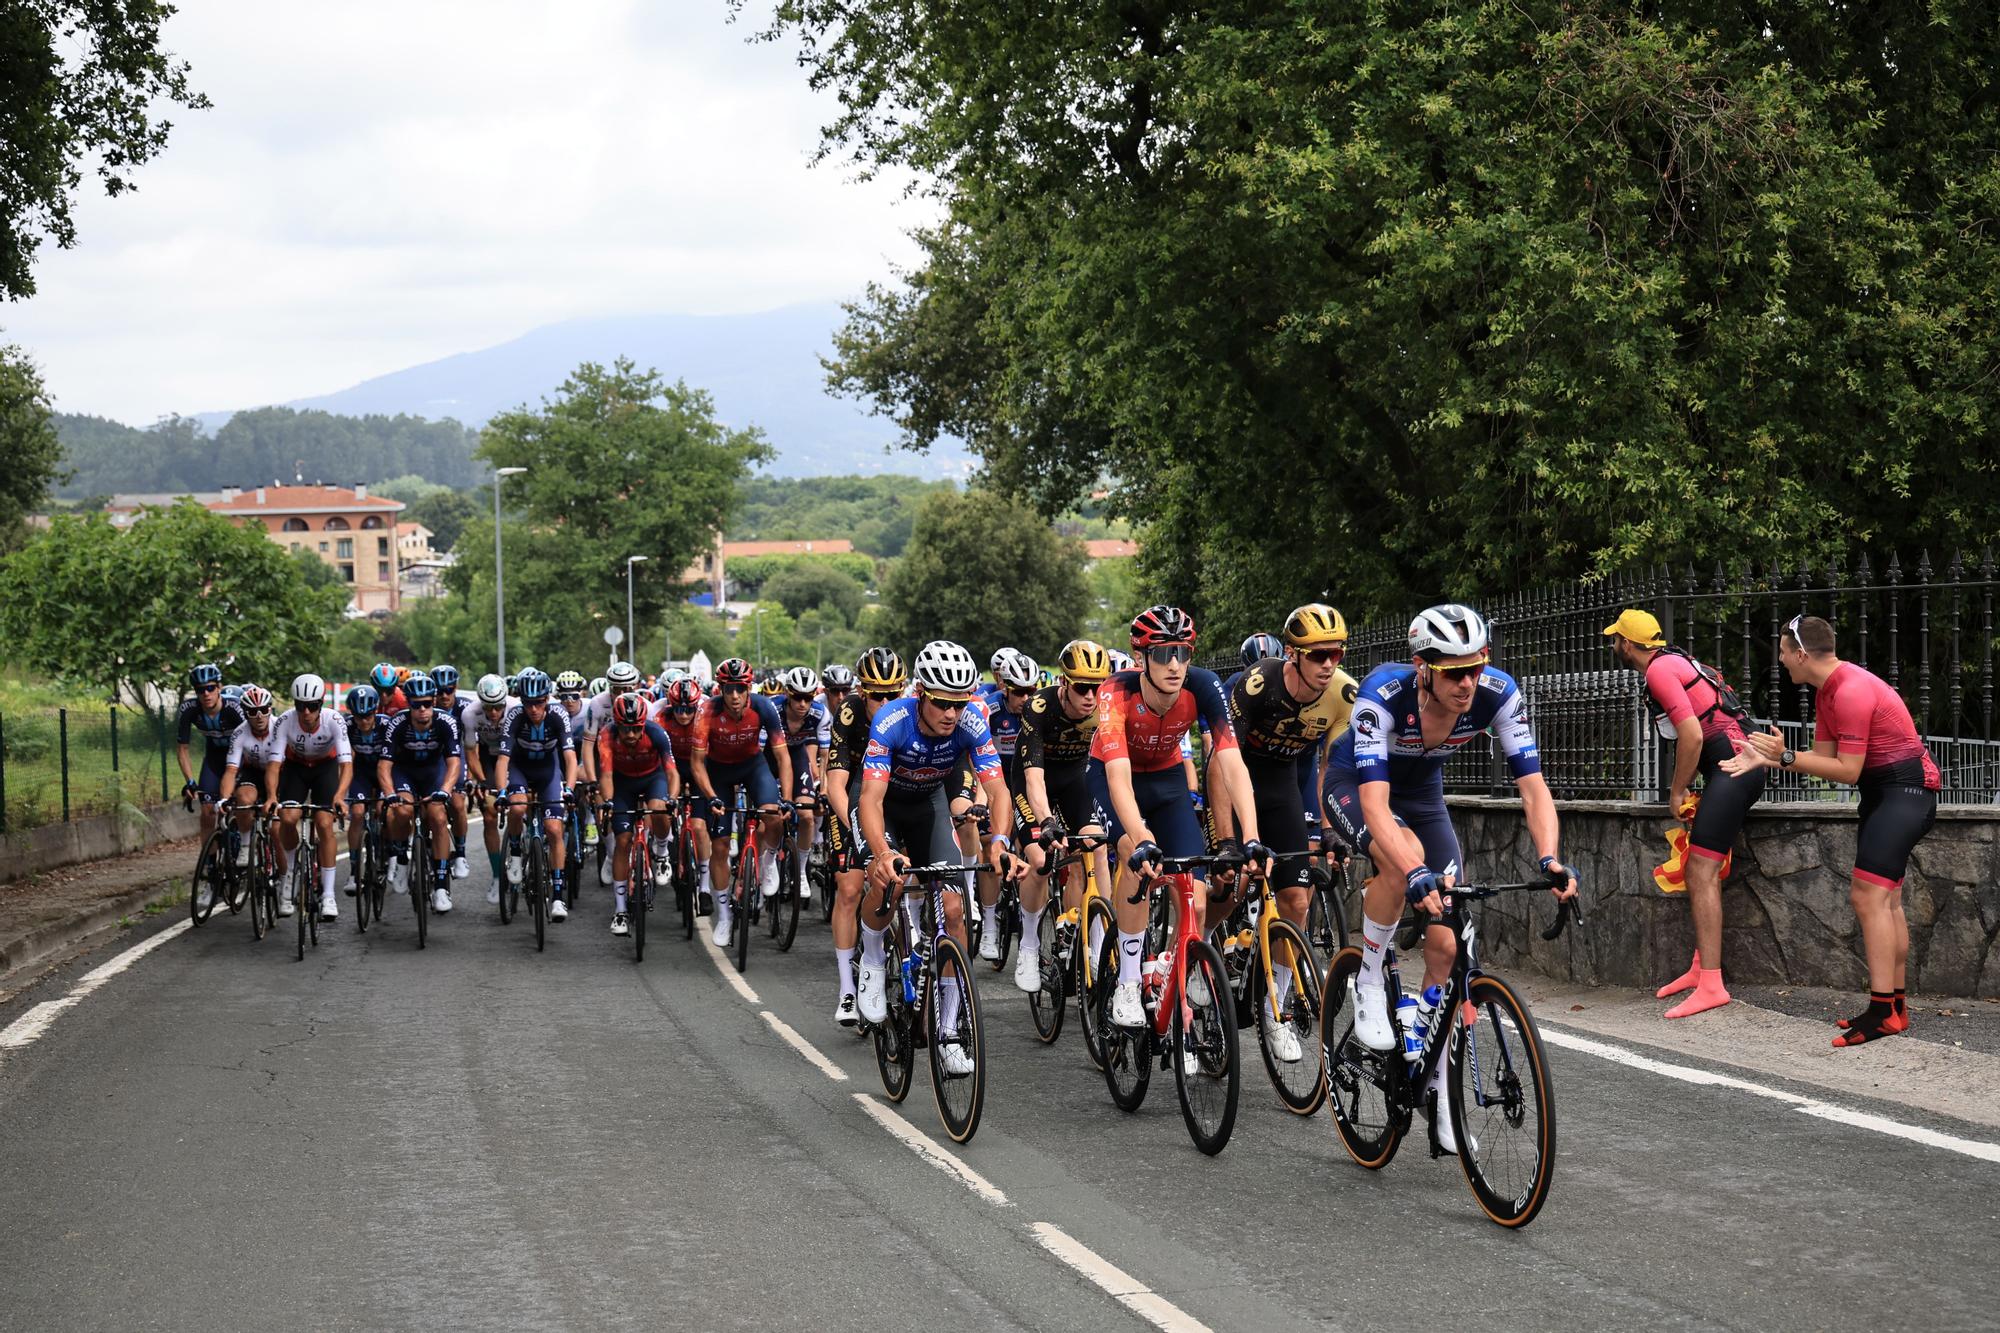 IMÁGENES | Las mejores imágenes de la etapa 1 del Tour de Francia